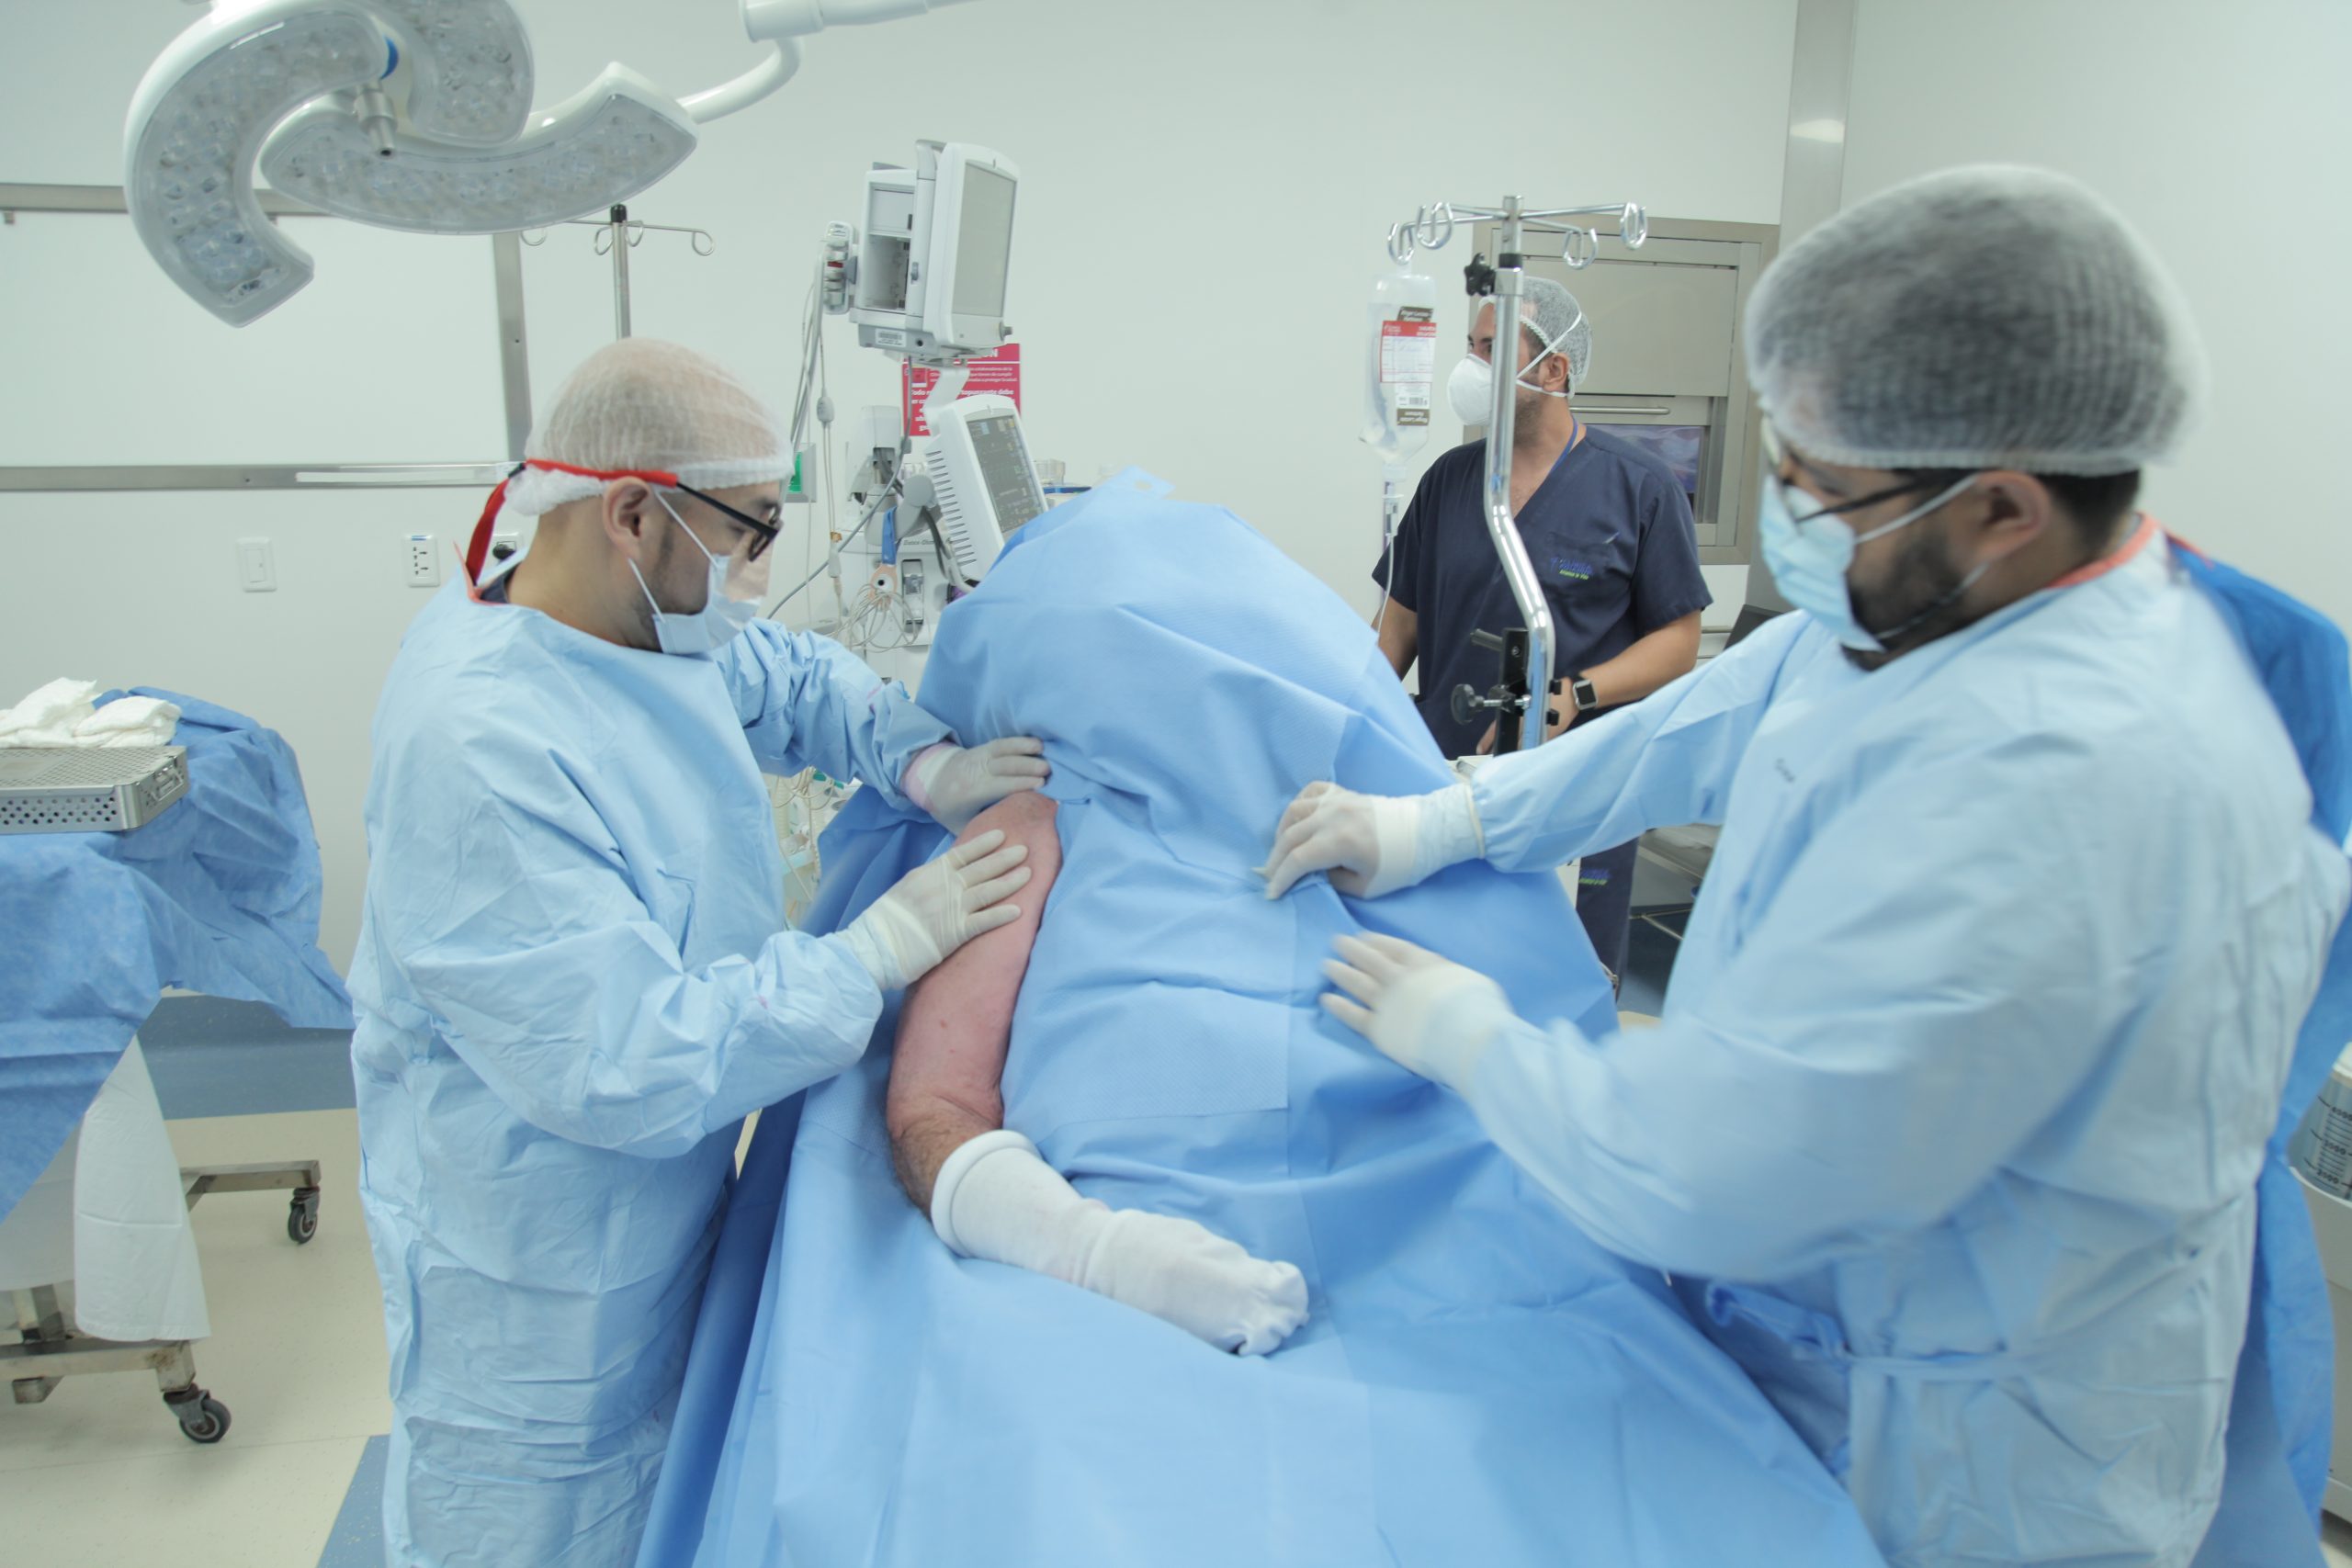 La Clínica Foianini marca un hito en Bolivia al realizar la primera cirugía asistida con realidad mixta